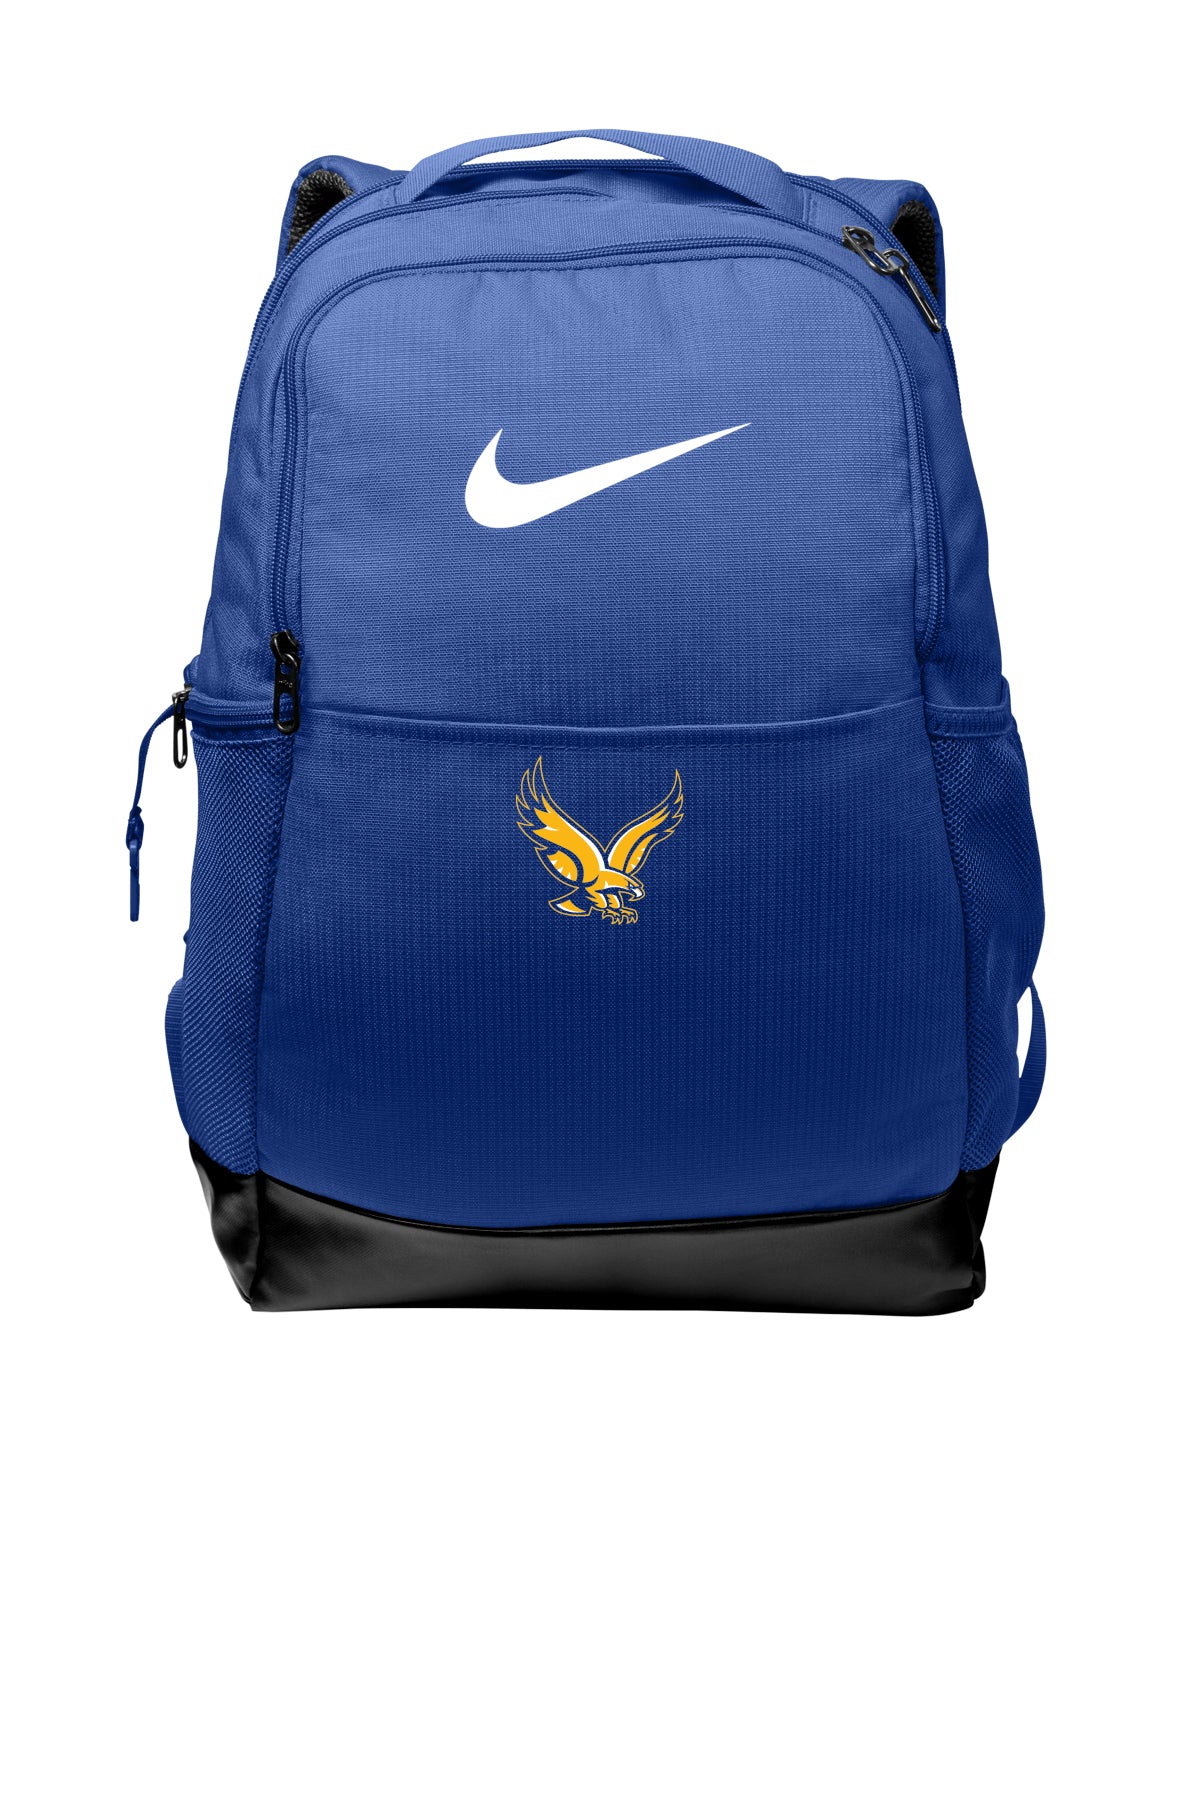 NKDH7709 - SPIRIT - Nike Brasilia Medium Backpack